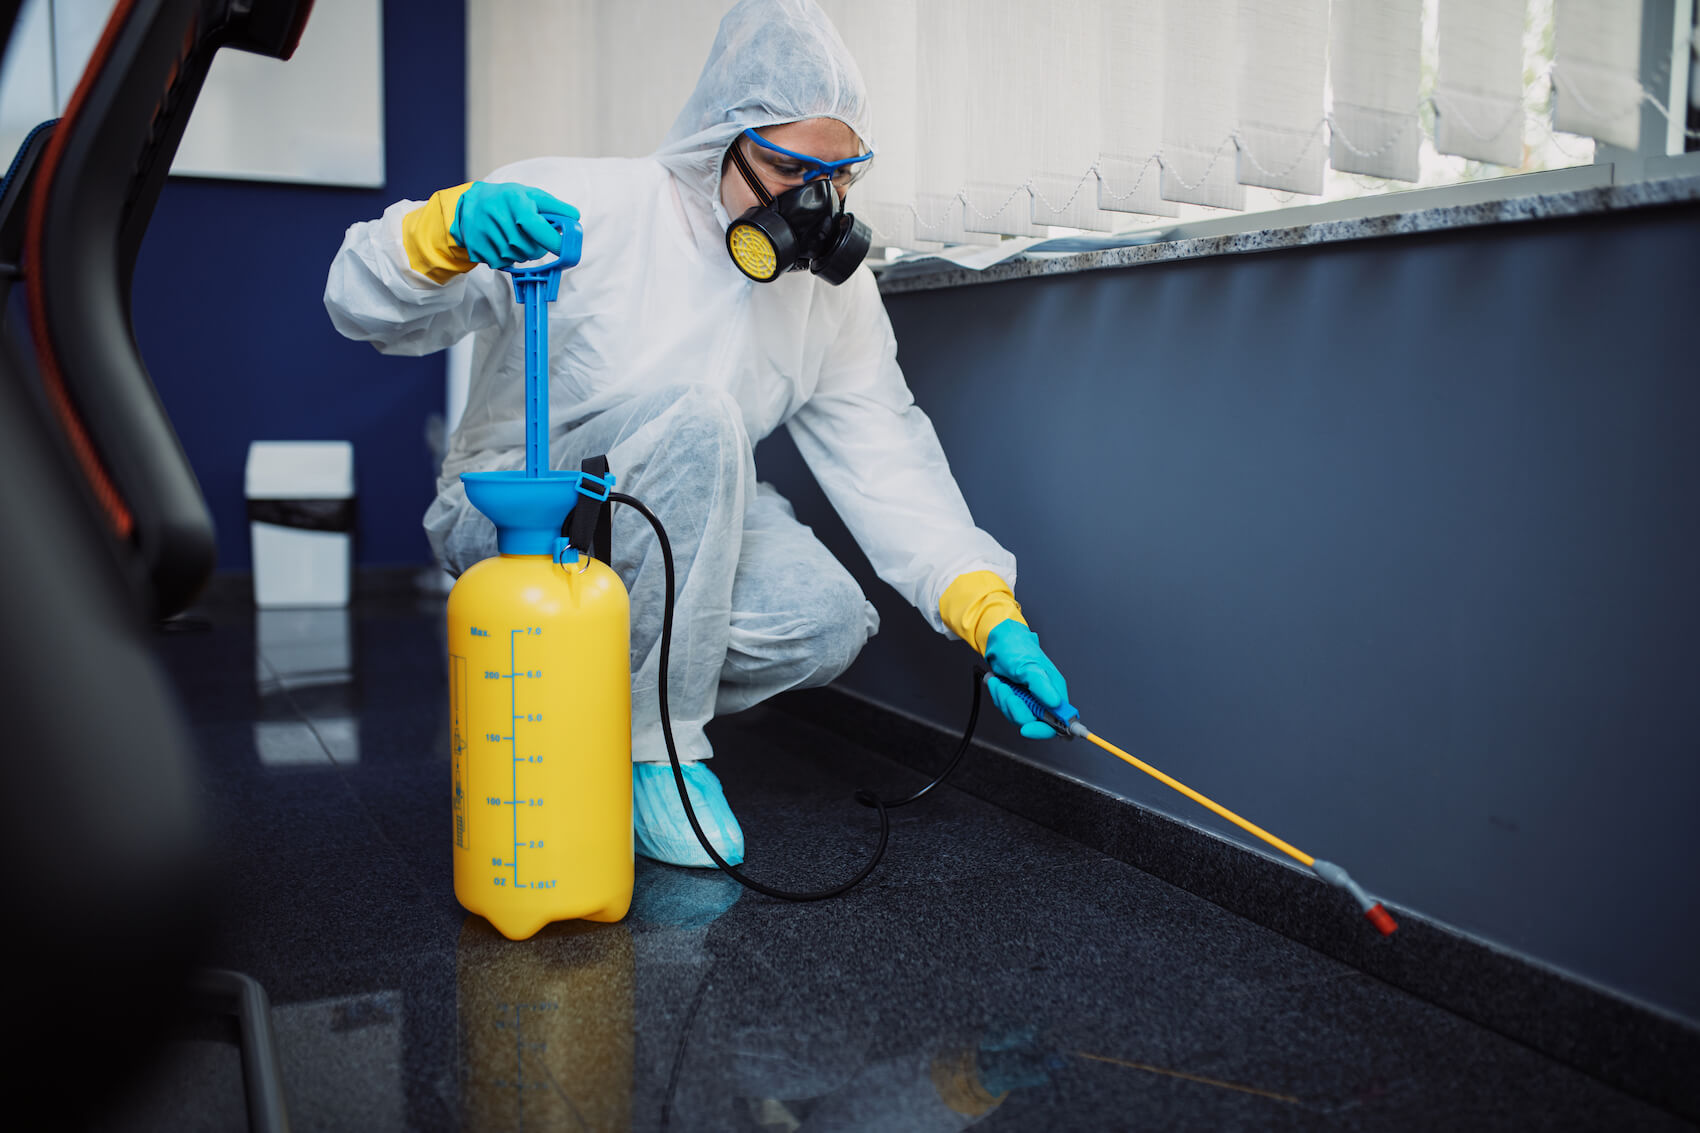 Specjalnie przygotowany pracownik sprząta pomieszczenie za pomocą specjalistycznych środków i urządzeń w bezpieczny sposób.